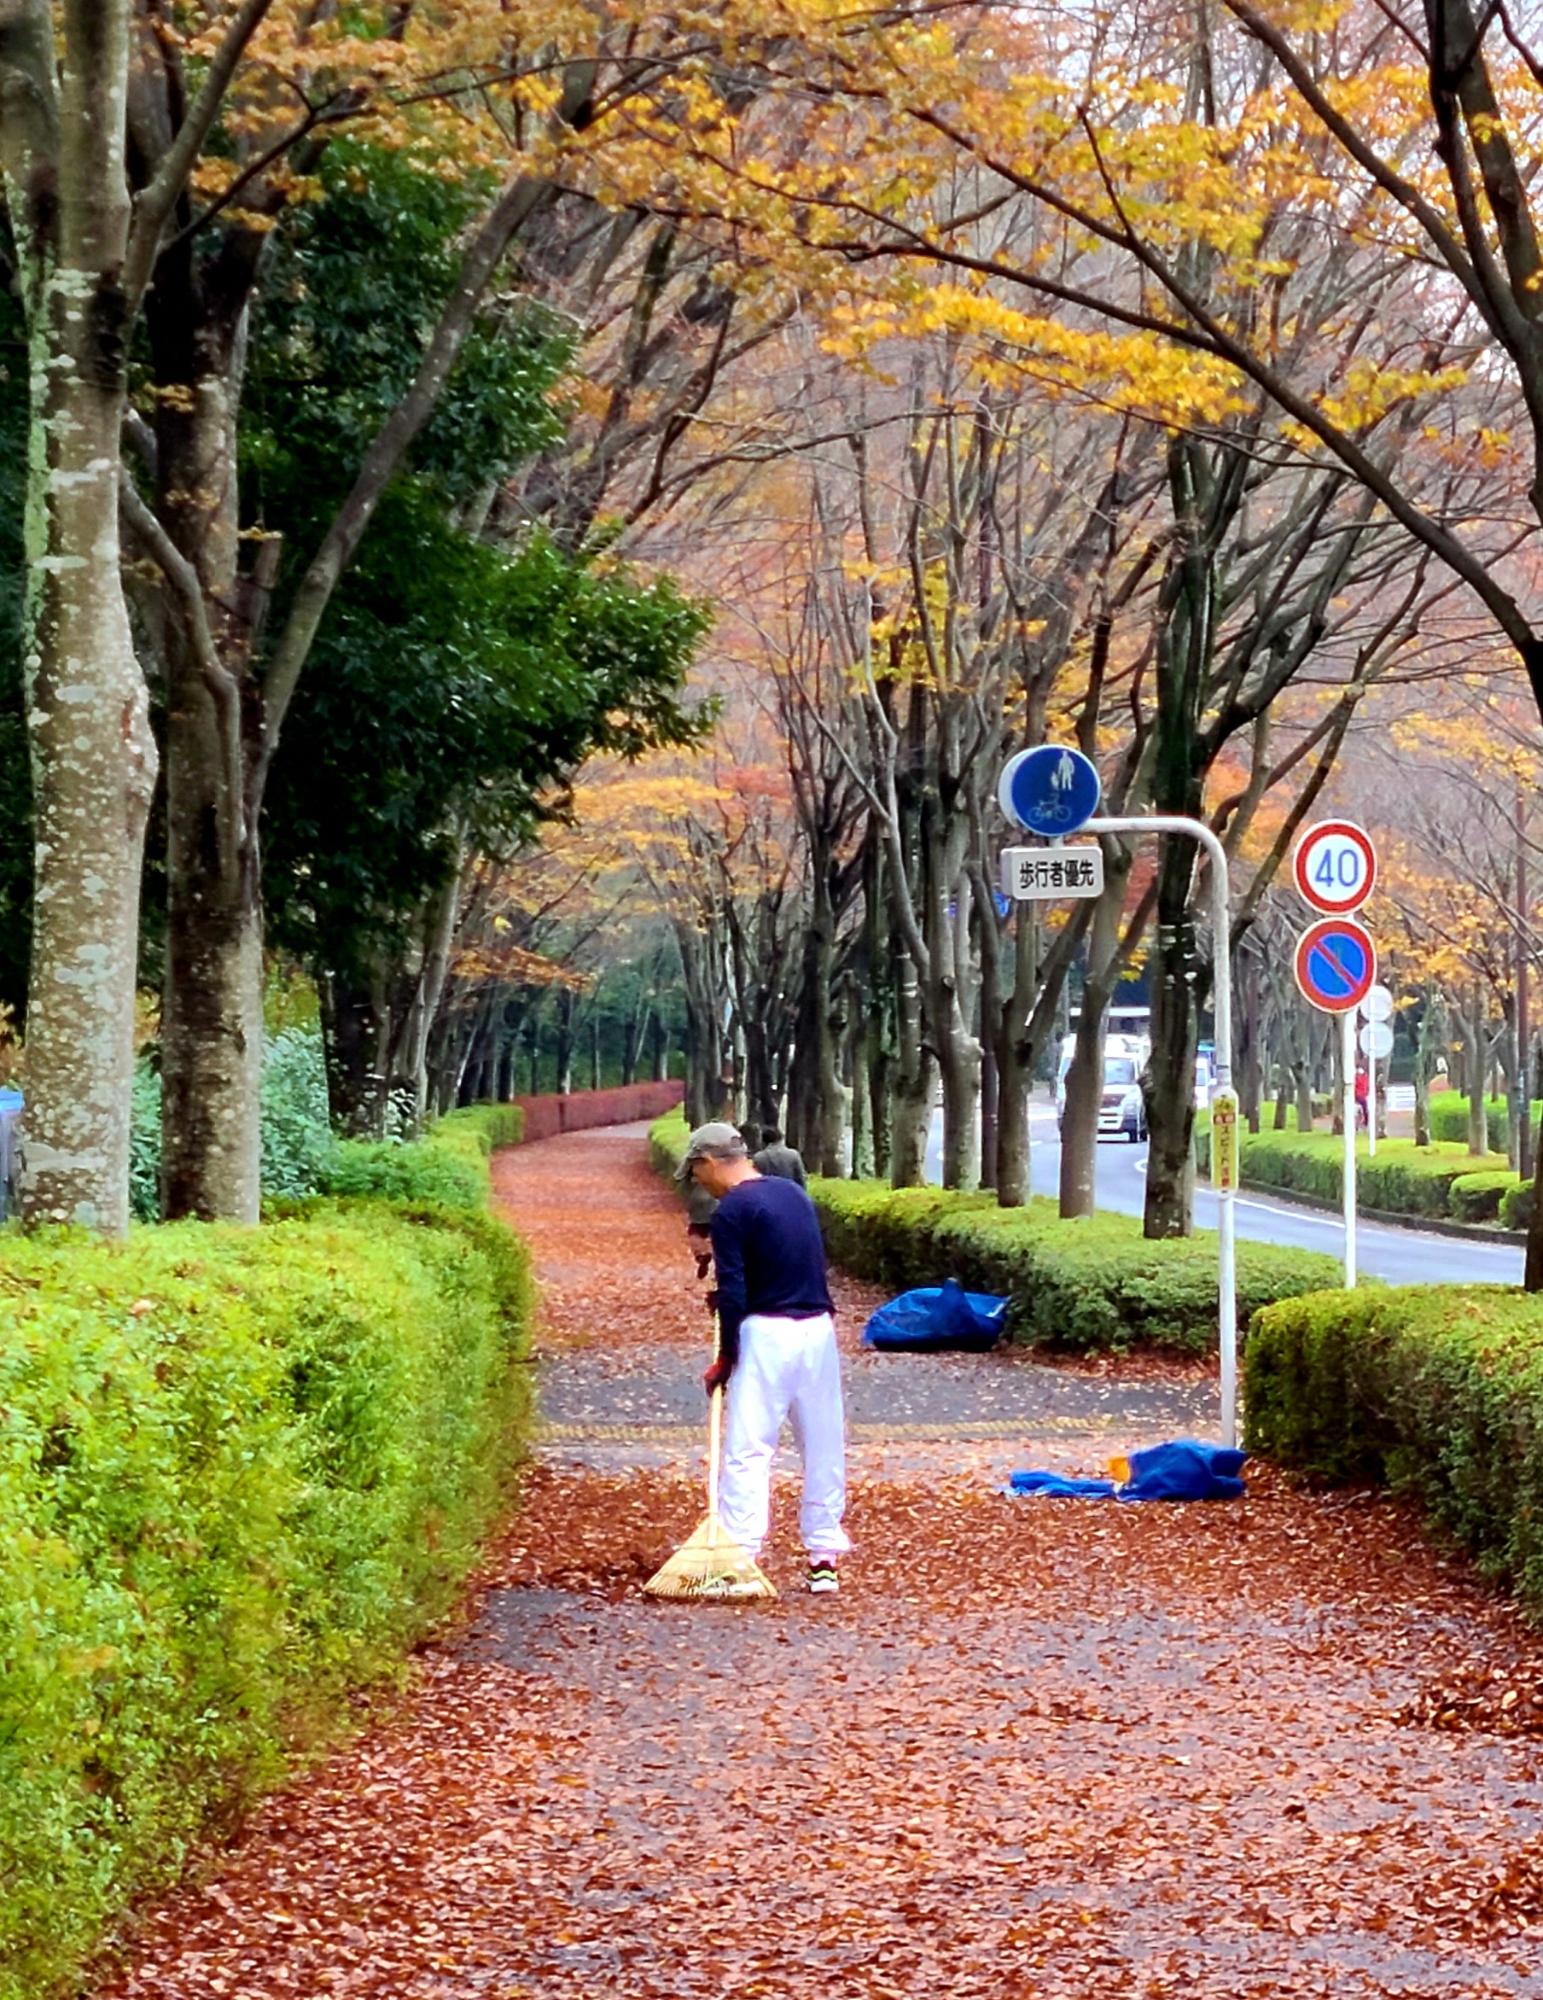 森の里道路わきの紅葉した並木道を赤く染める落ち葉とその葉を掃く人